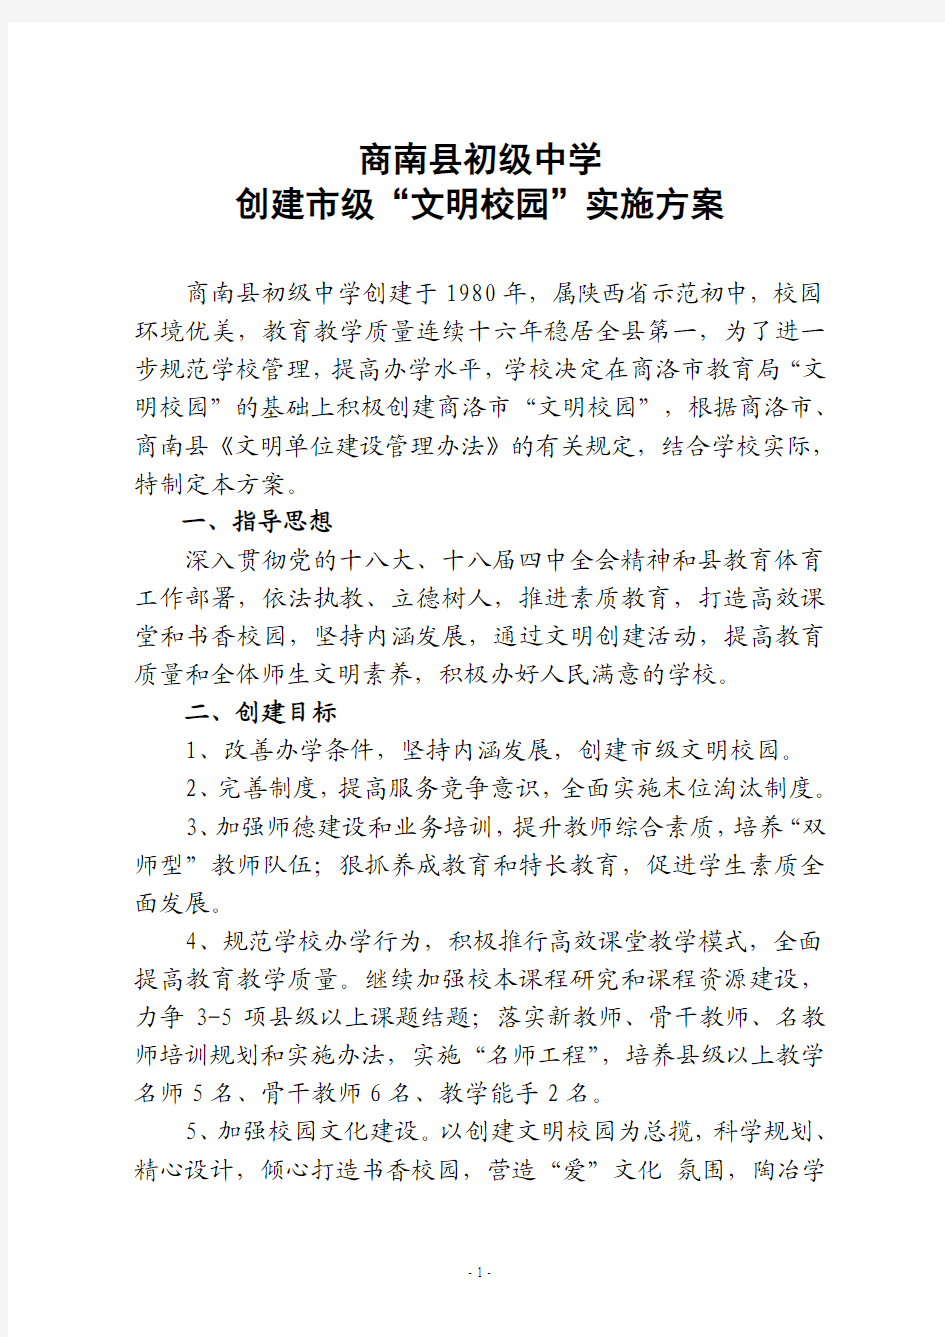 商南县初级中学创建市级文明单位方案